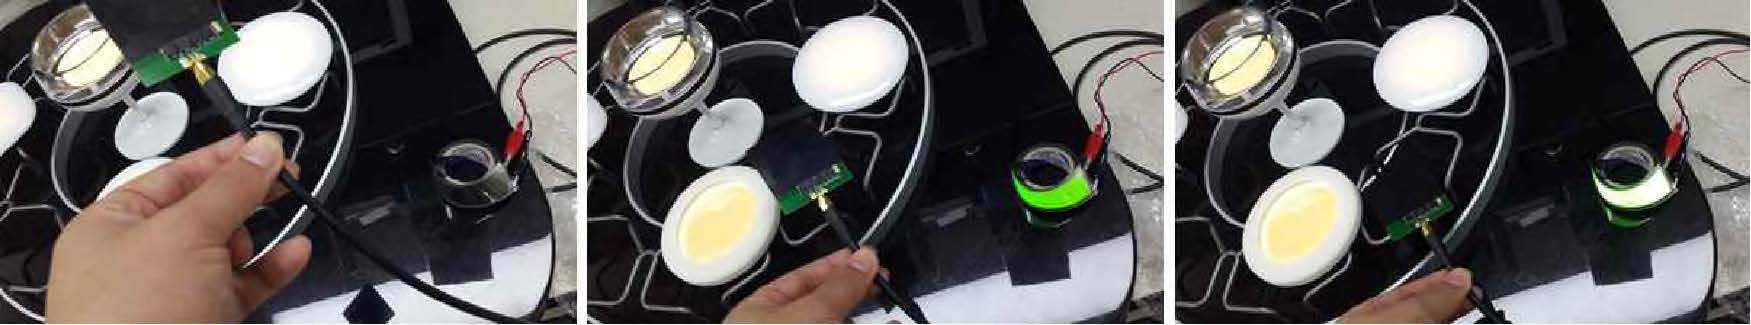 무선 전원 공급 유연 OLED 조명 구동 실험